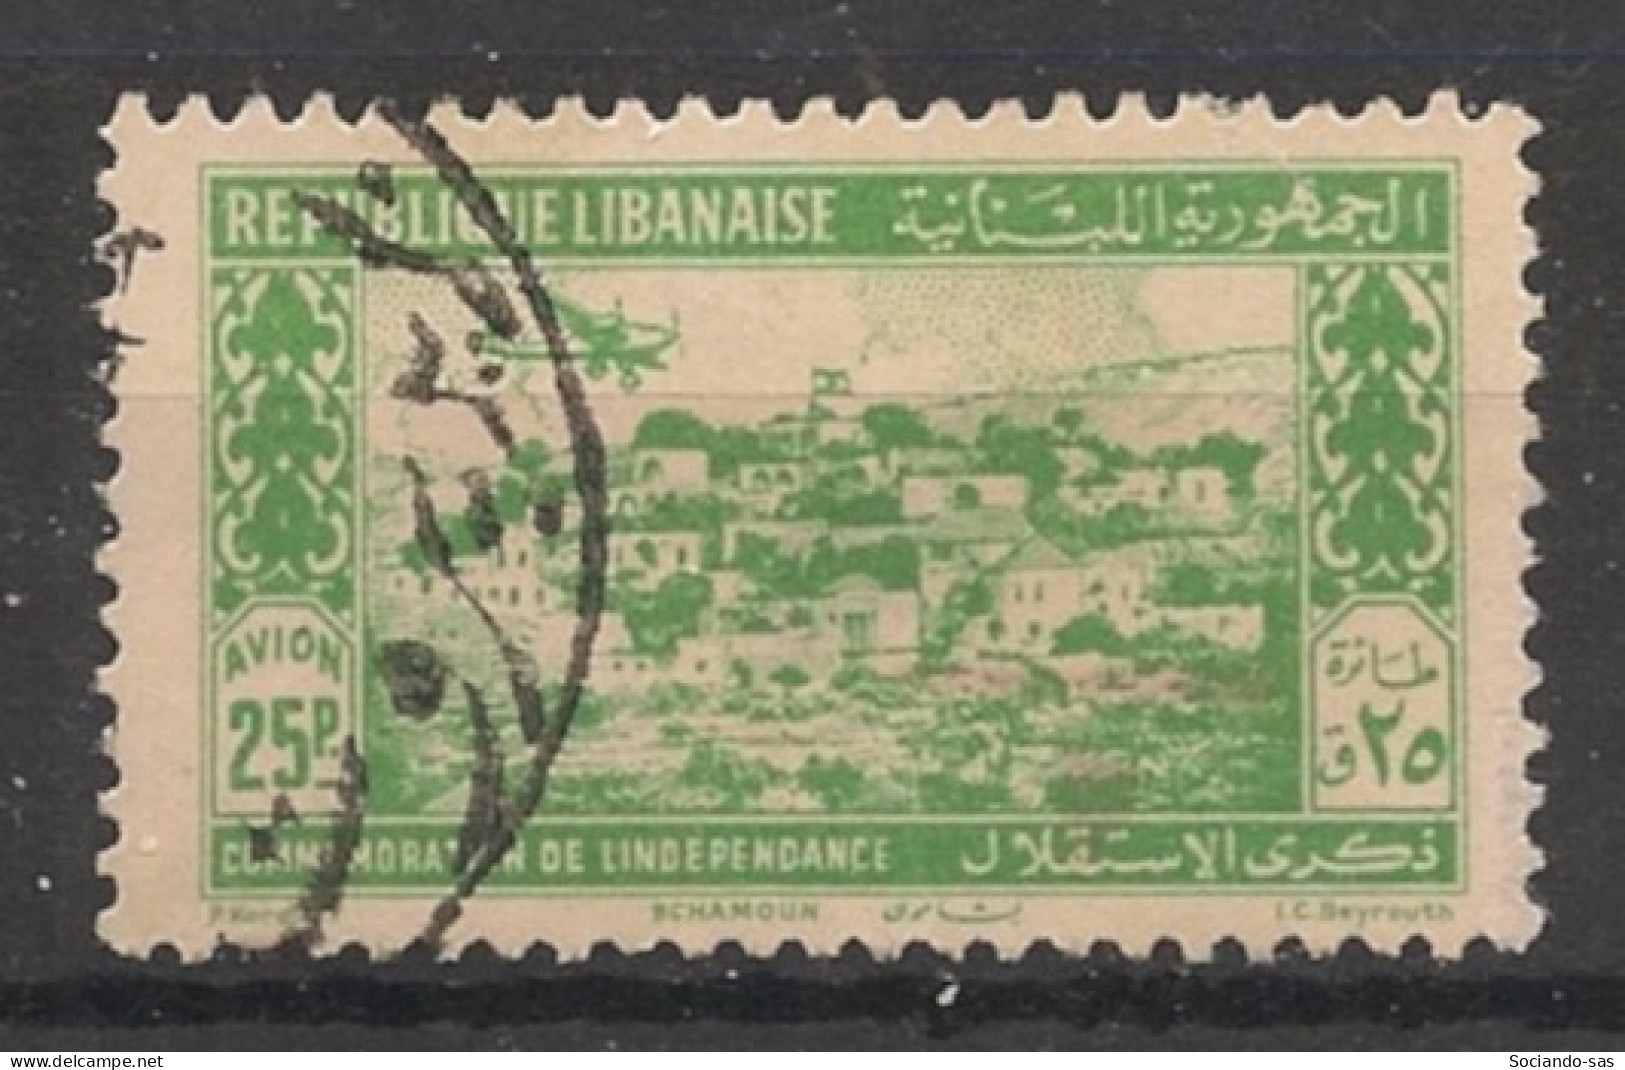 GRAND LIBAN - 1943 - Poste Aérienne PA N°YT. 85 - Avion 25pi Vert-jaune - Oblitéré / Used - Oblitérés